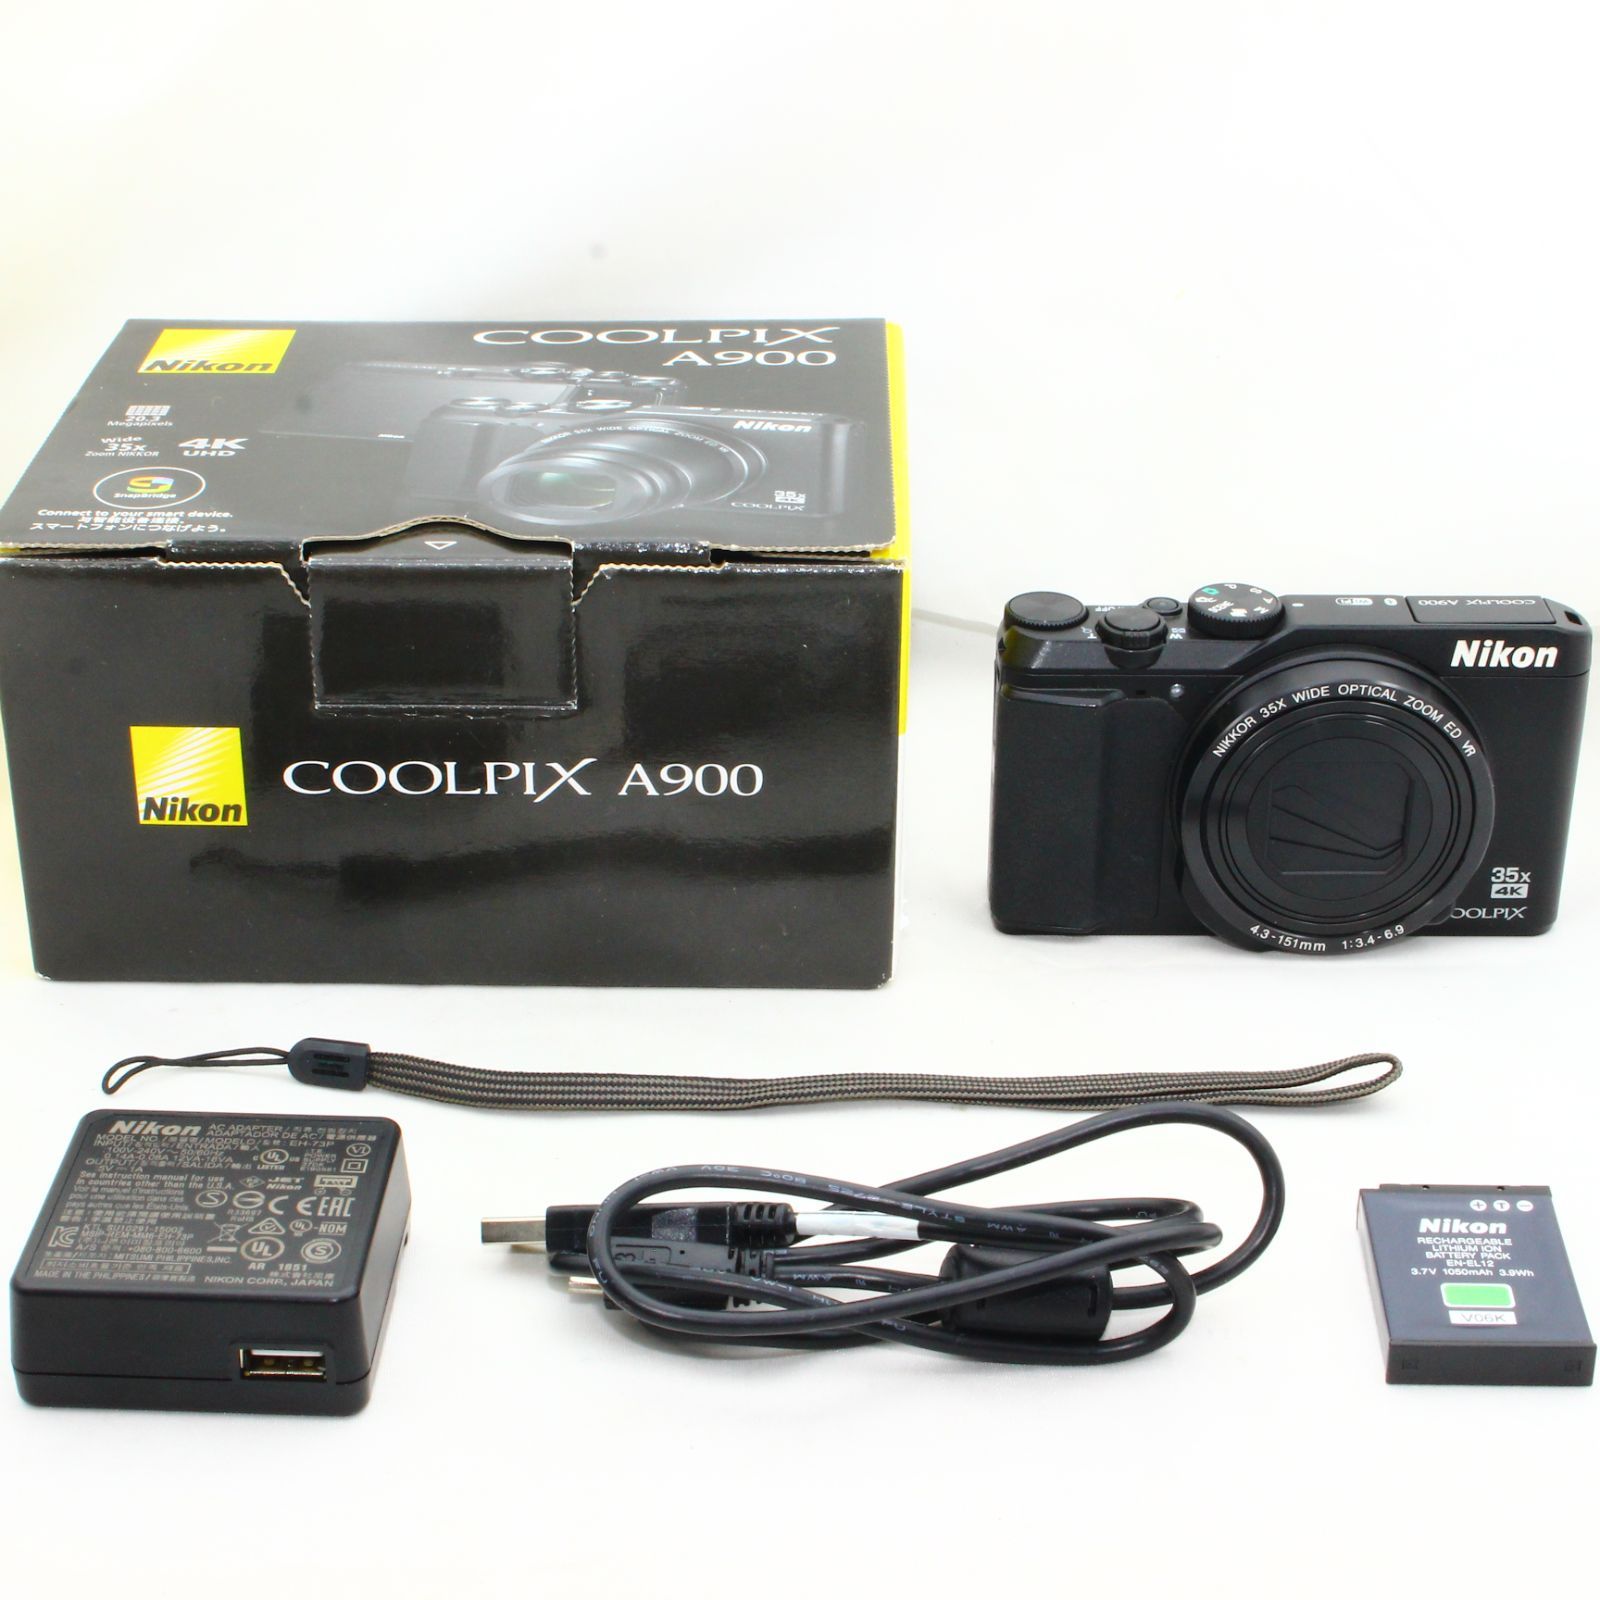 Nikon デジタルカメラ COOLPIX A900 光学35倍ズーム 2029万画素